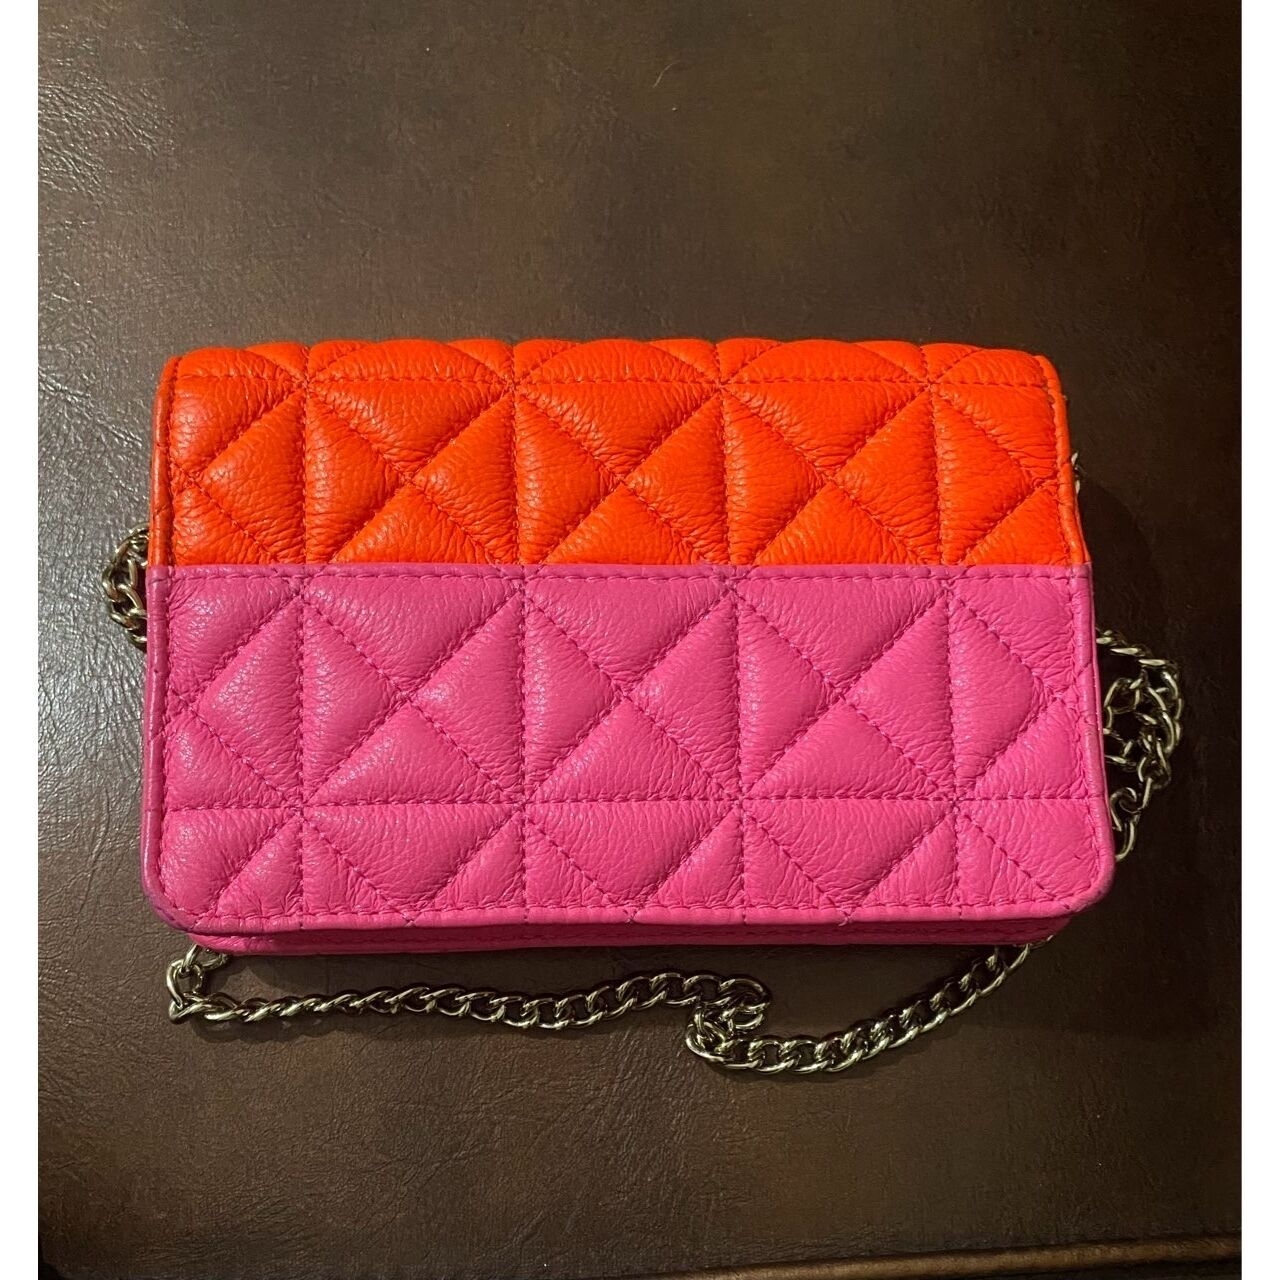 Kate Spade Orange & Pink Sling Bag